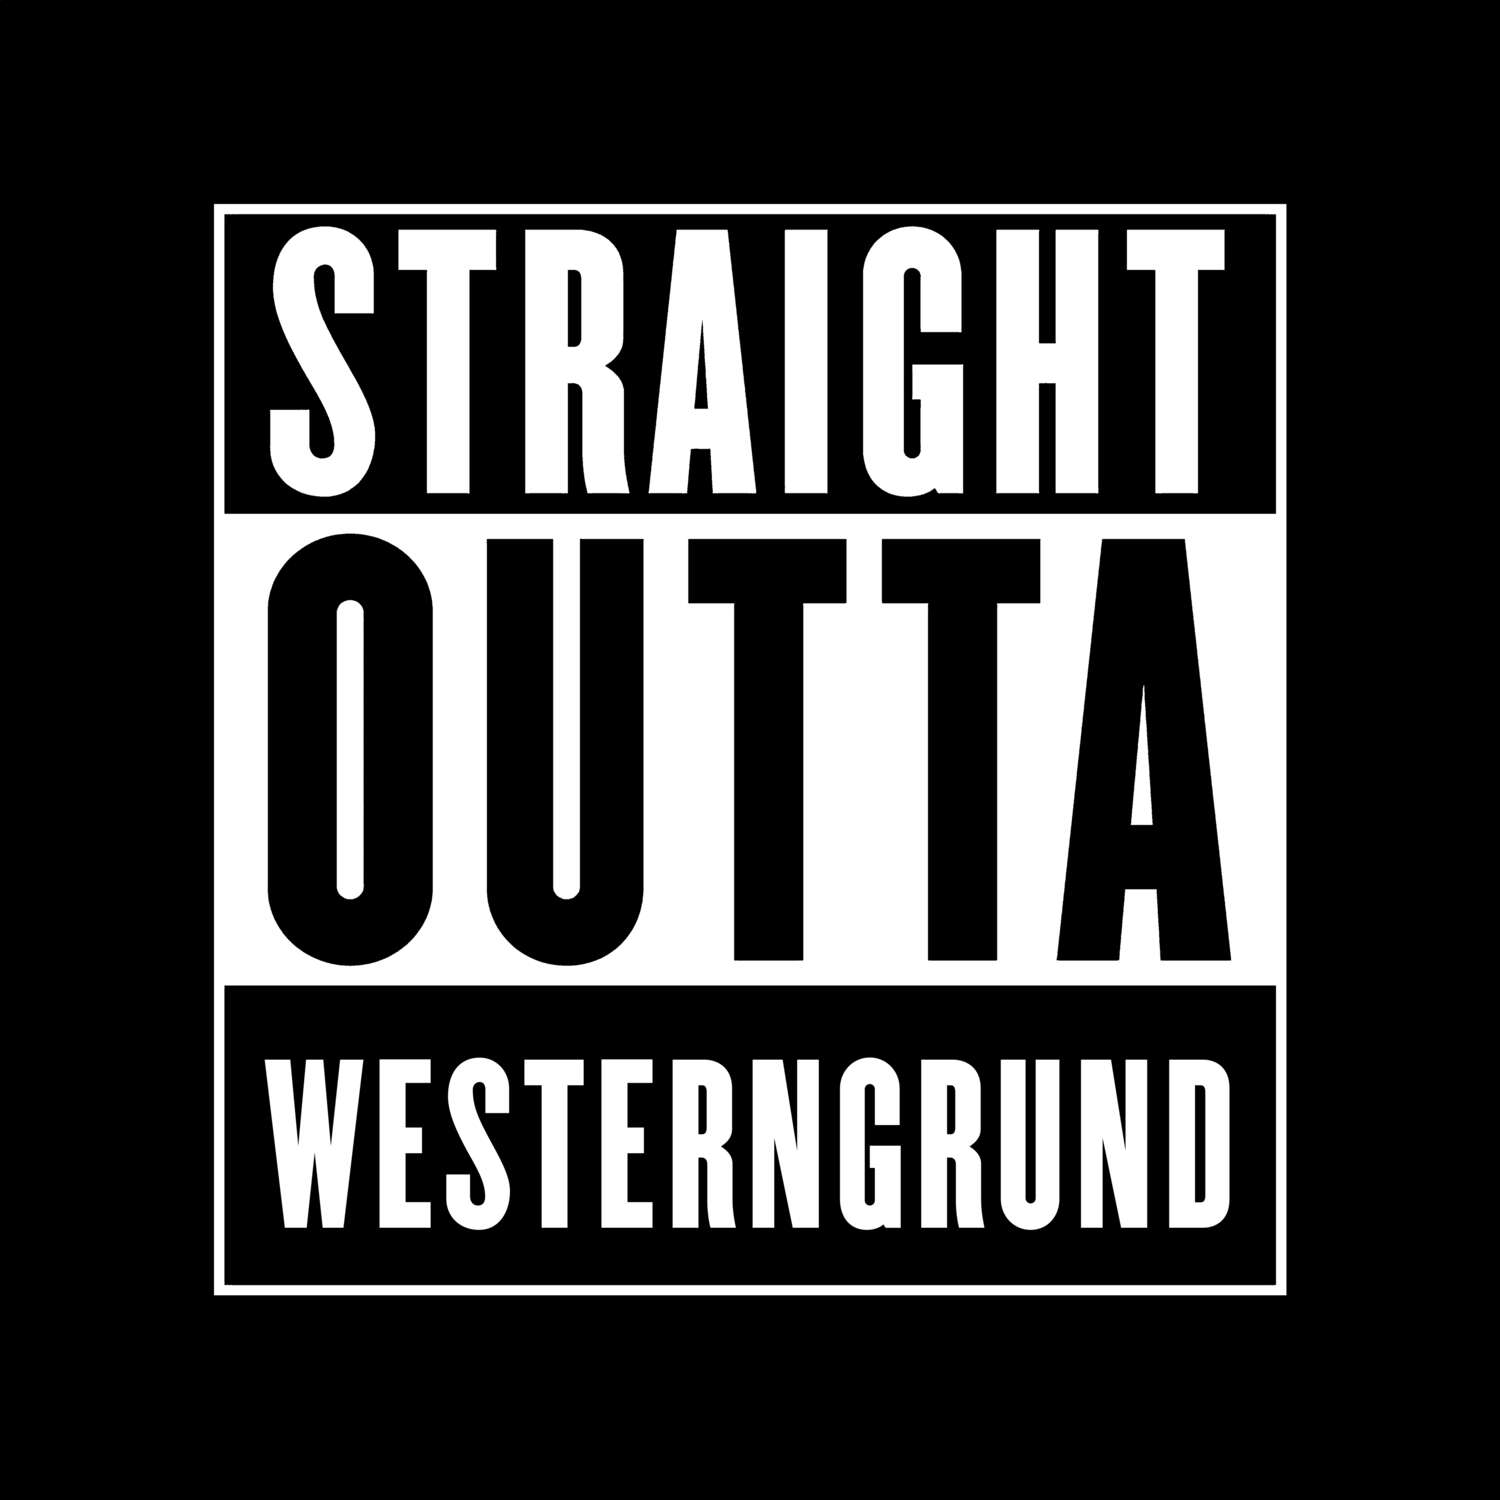 Westerngrund T-Shirt »Straight Outta«